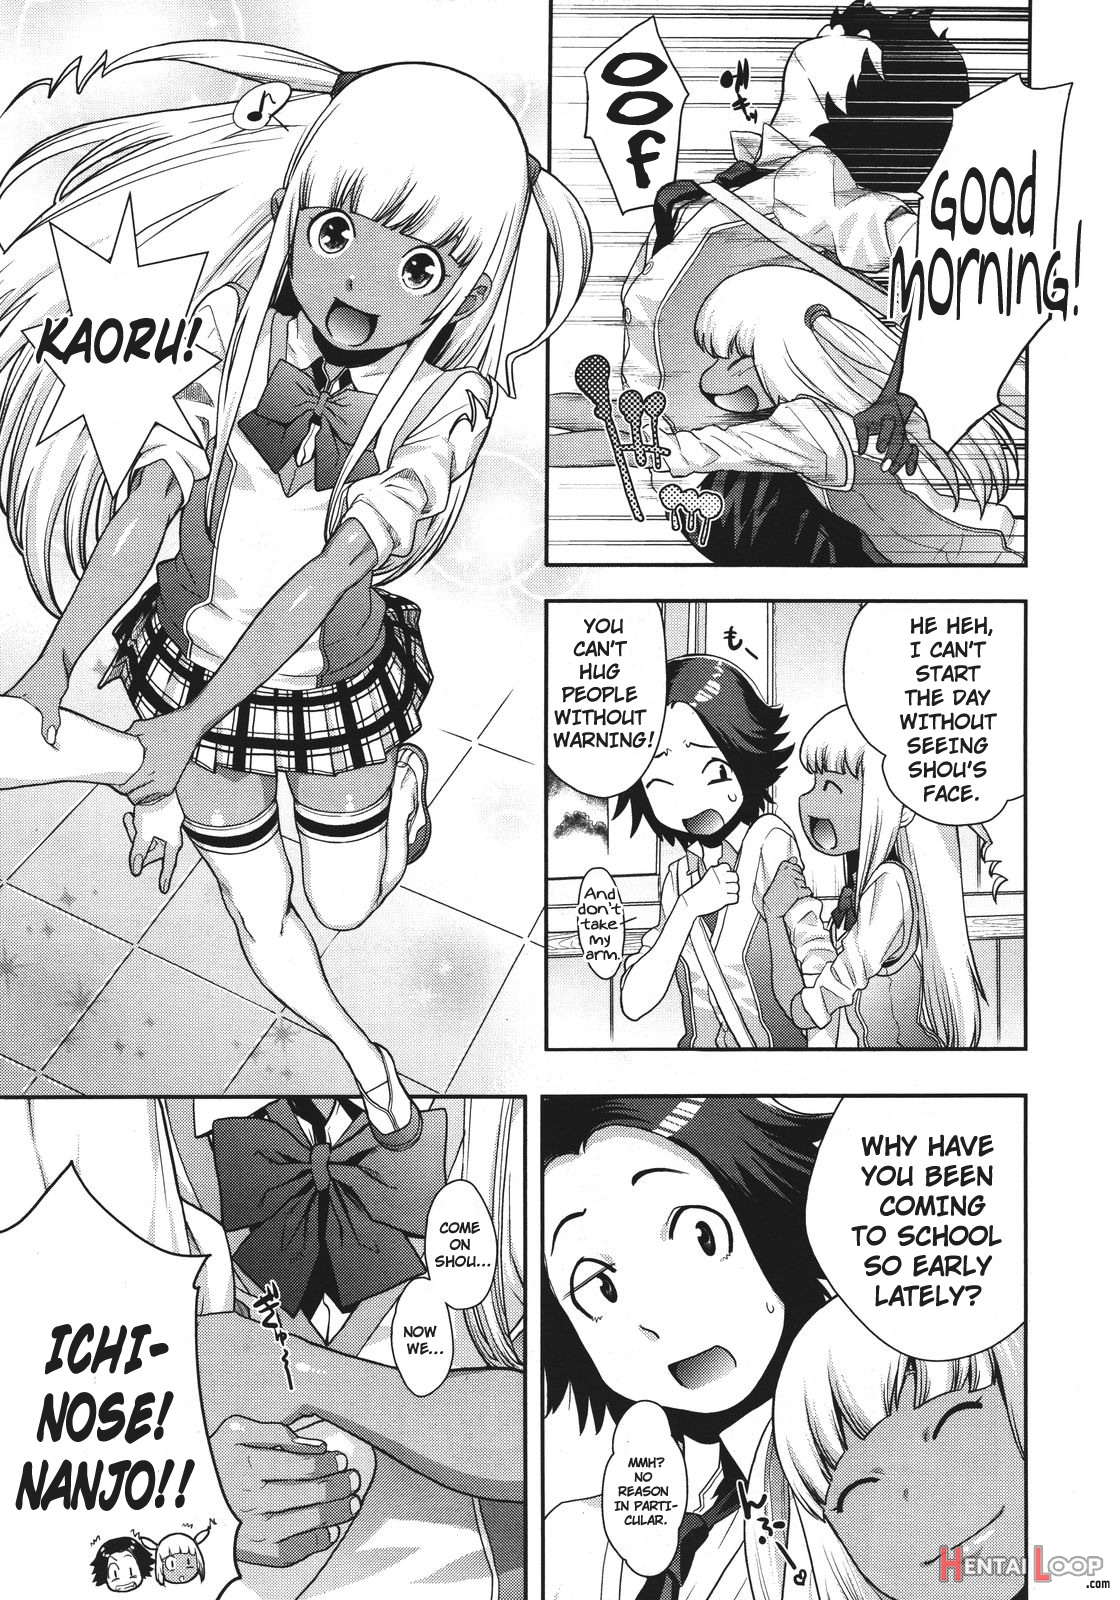 Akesuke No.2 page 3